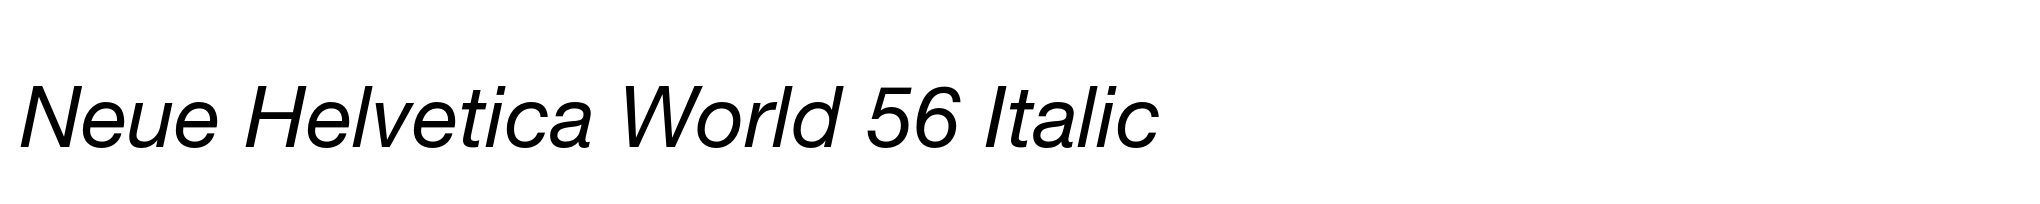 Neue Helvetica World 56 Italic image